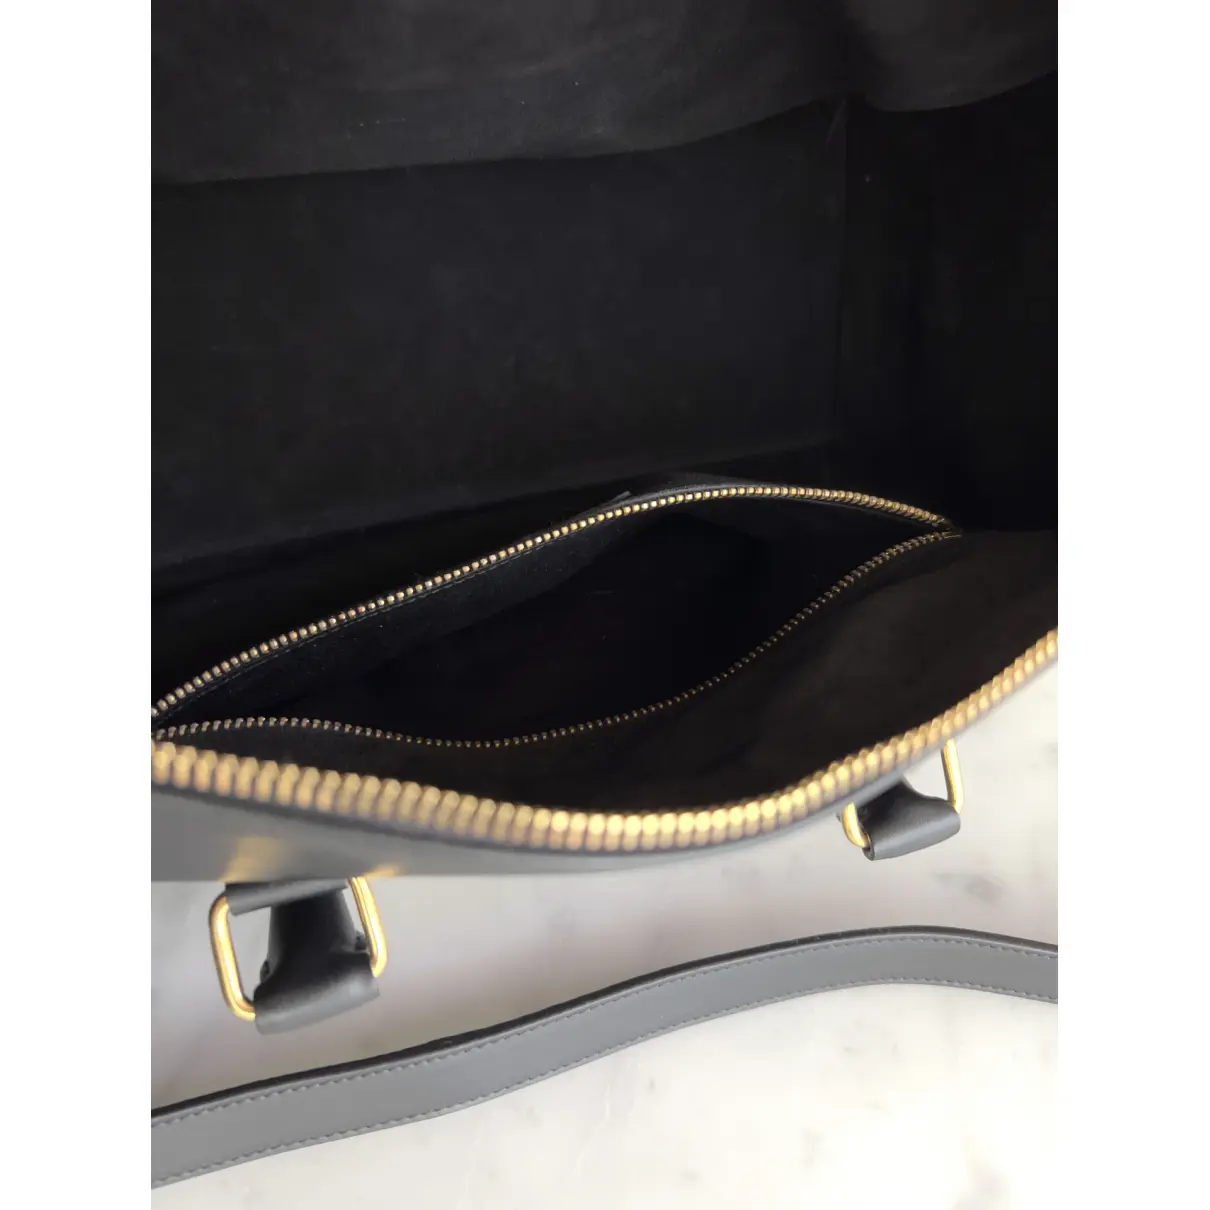 Buy Saint Laurent Duffle leather satchel online